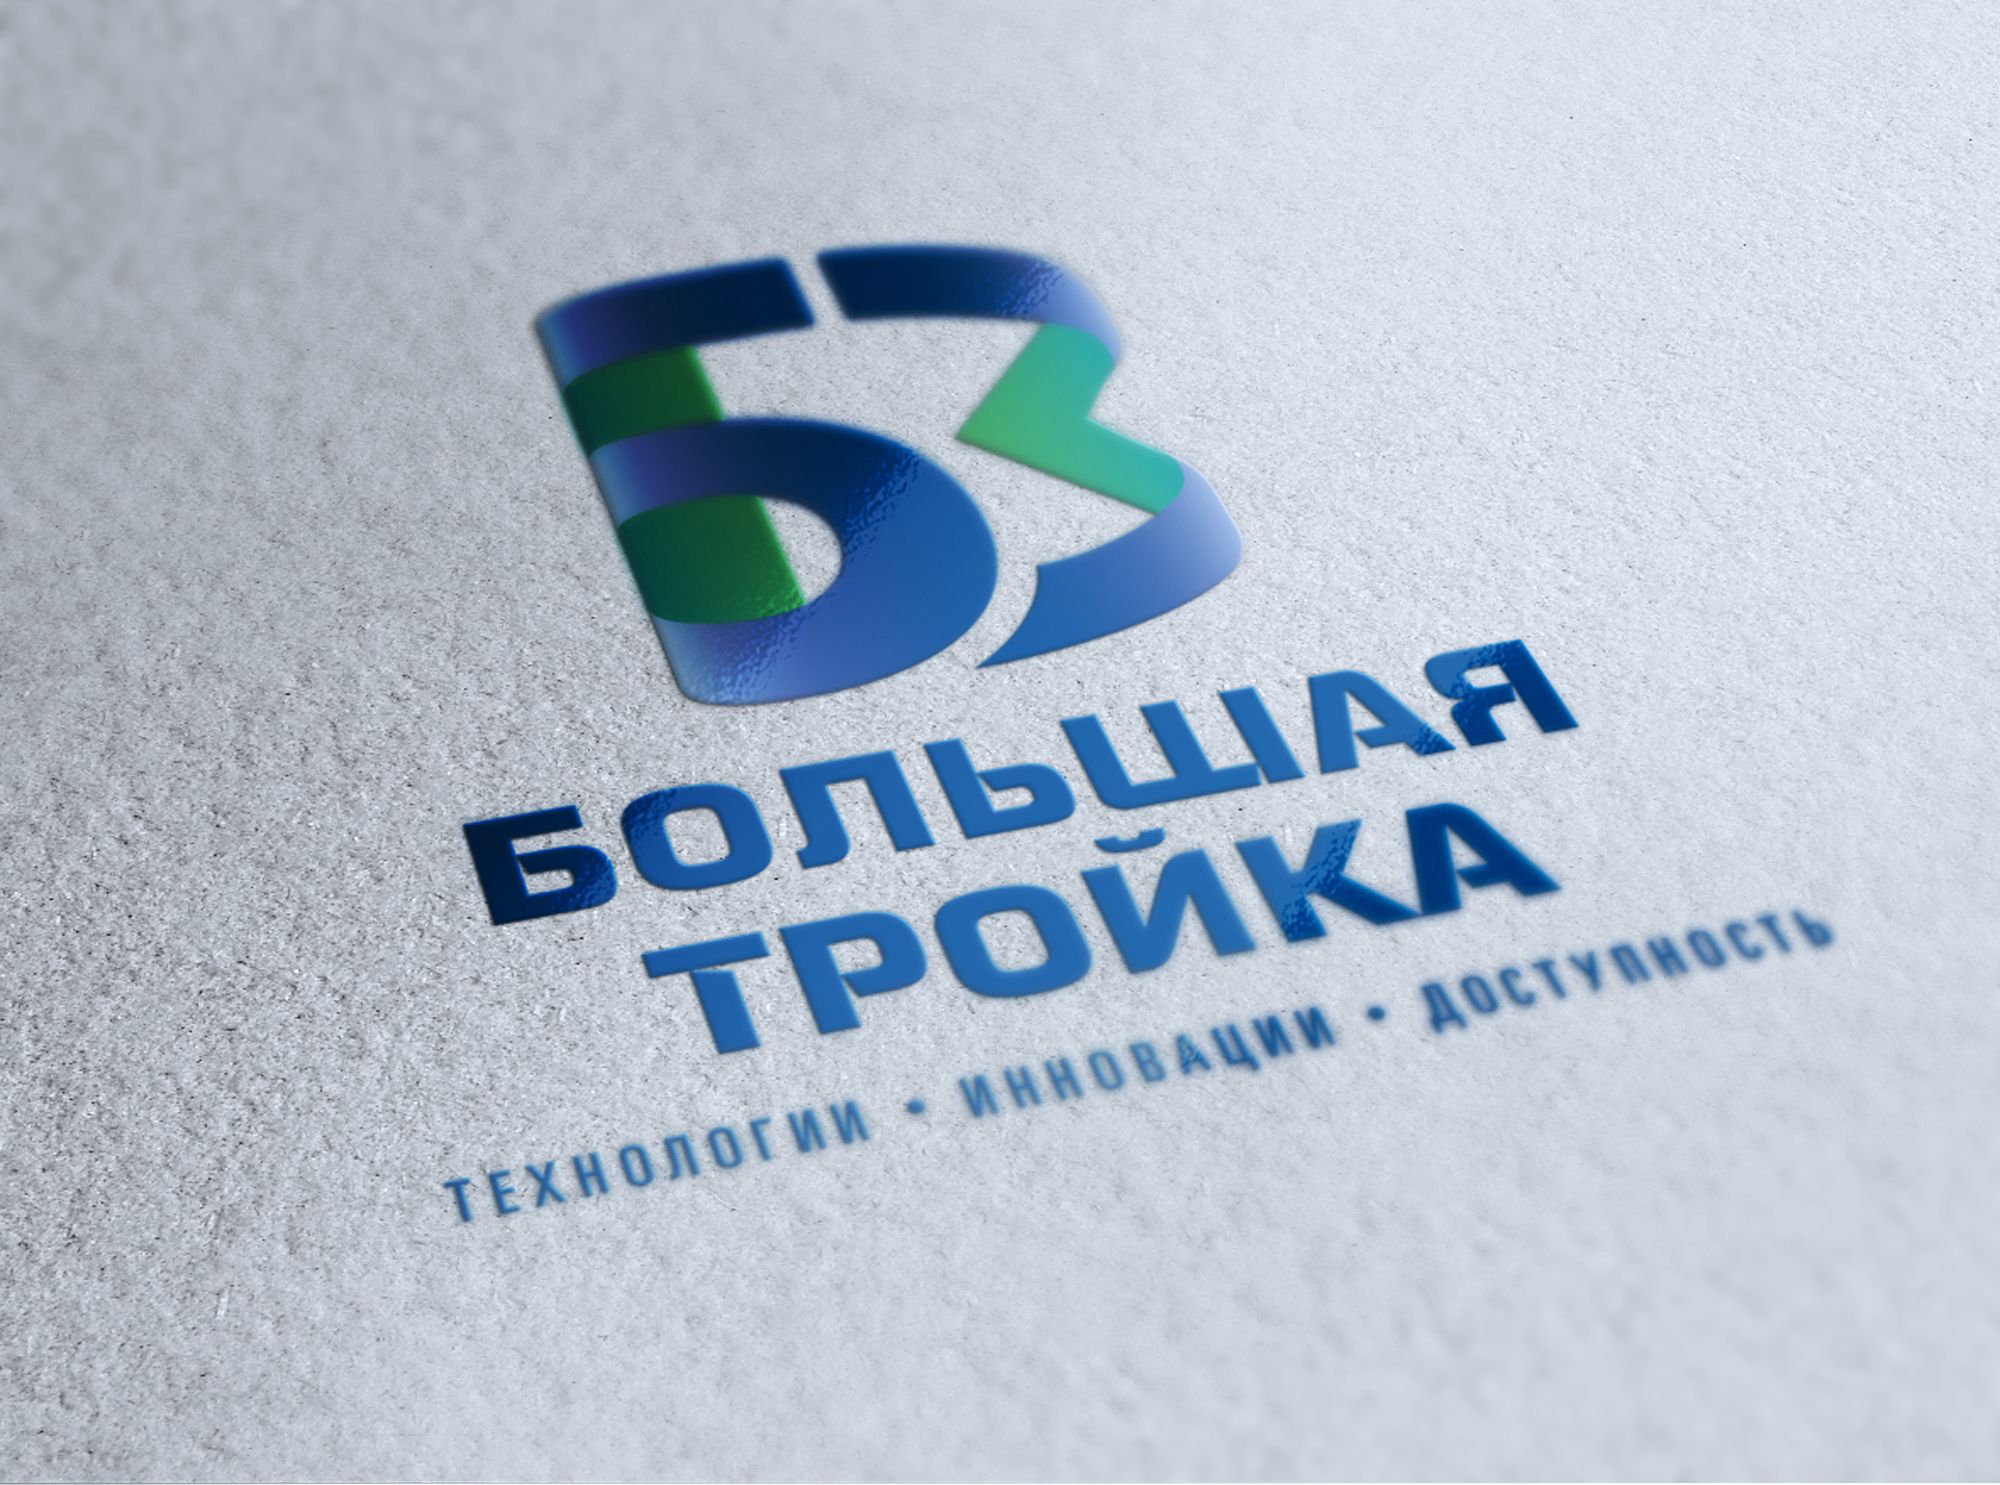 Логотип инновационной компании Большая Тройка - дизайнер mit-sey